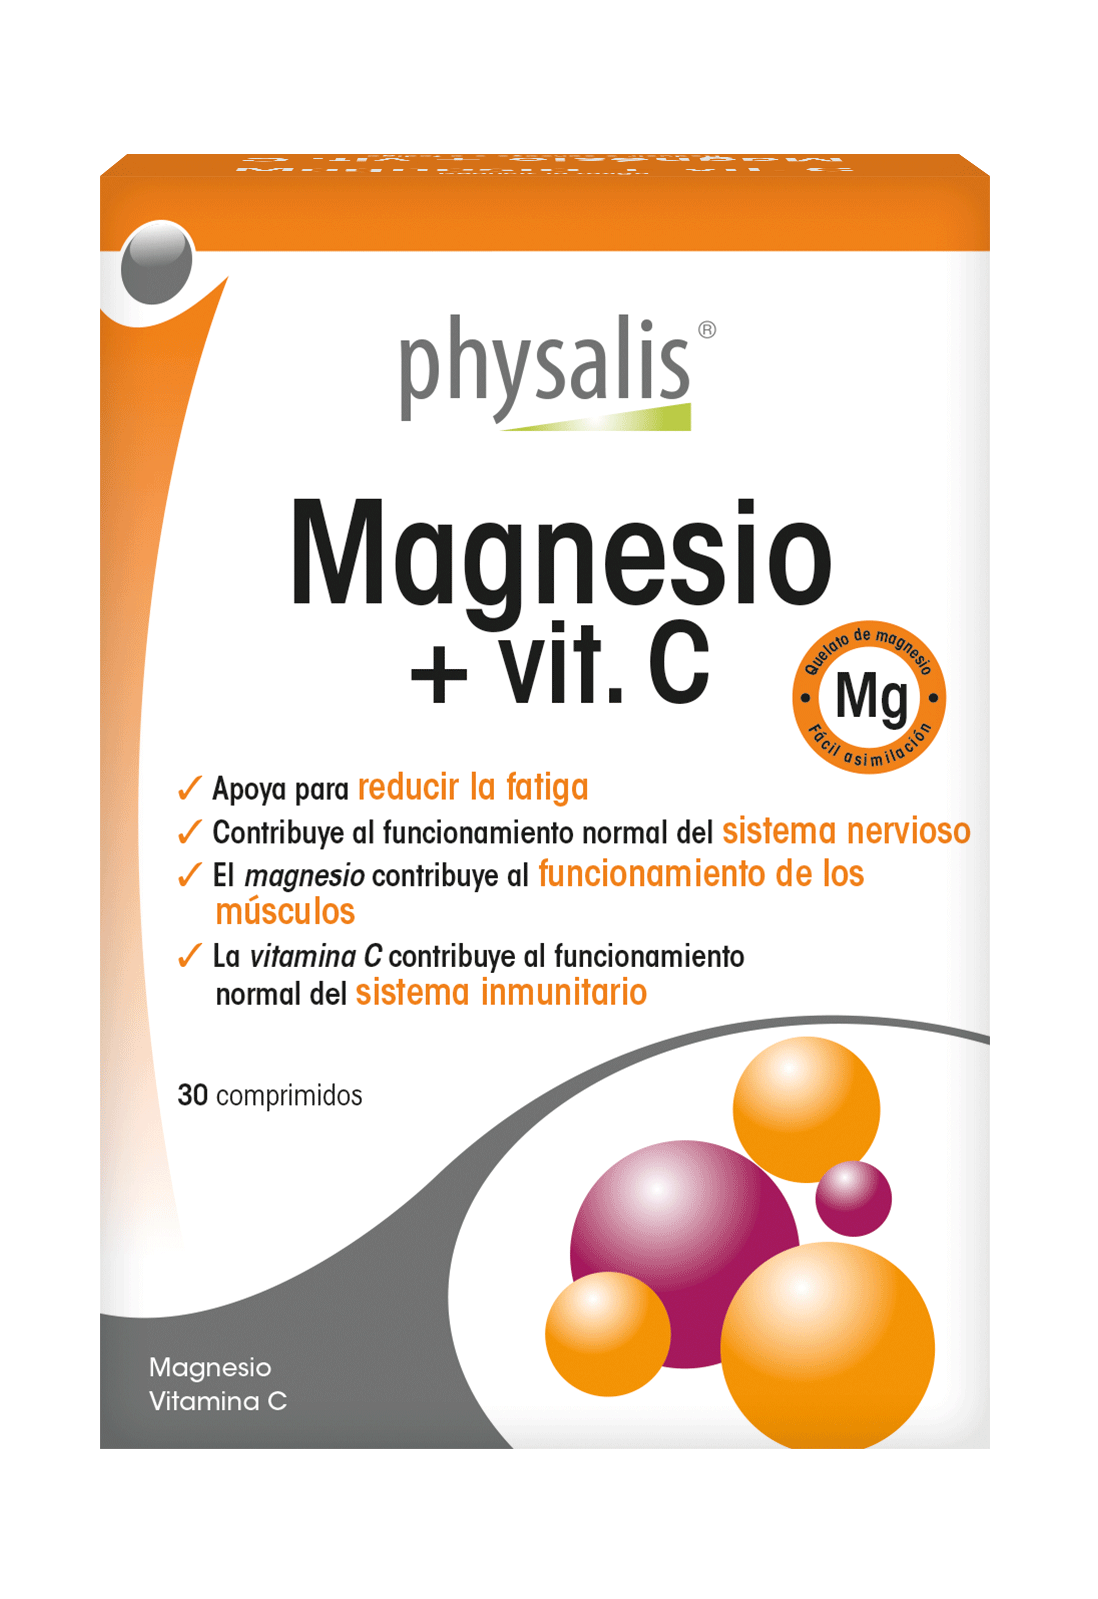 Magnesio + vit. C